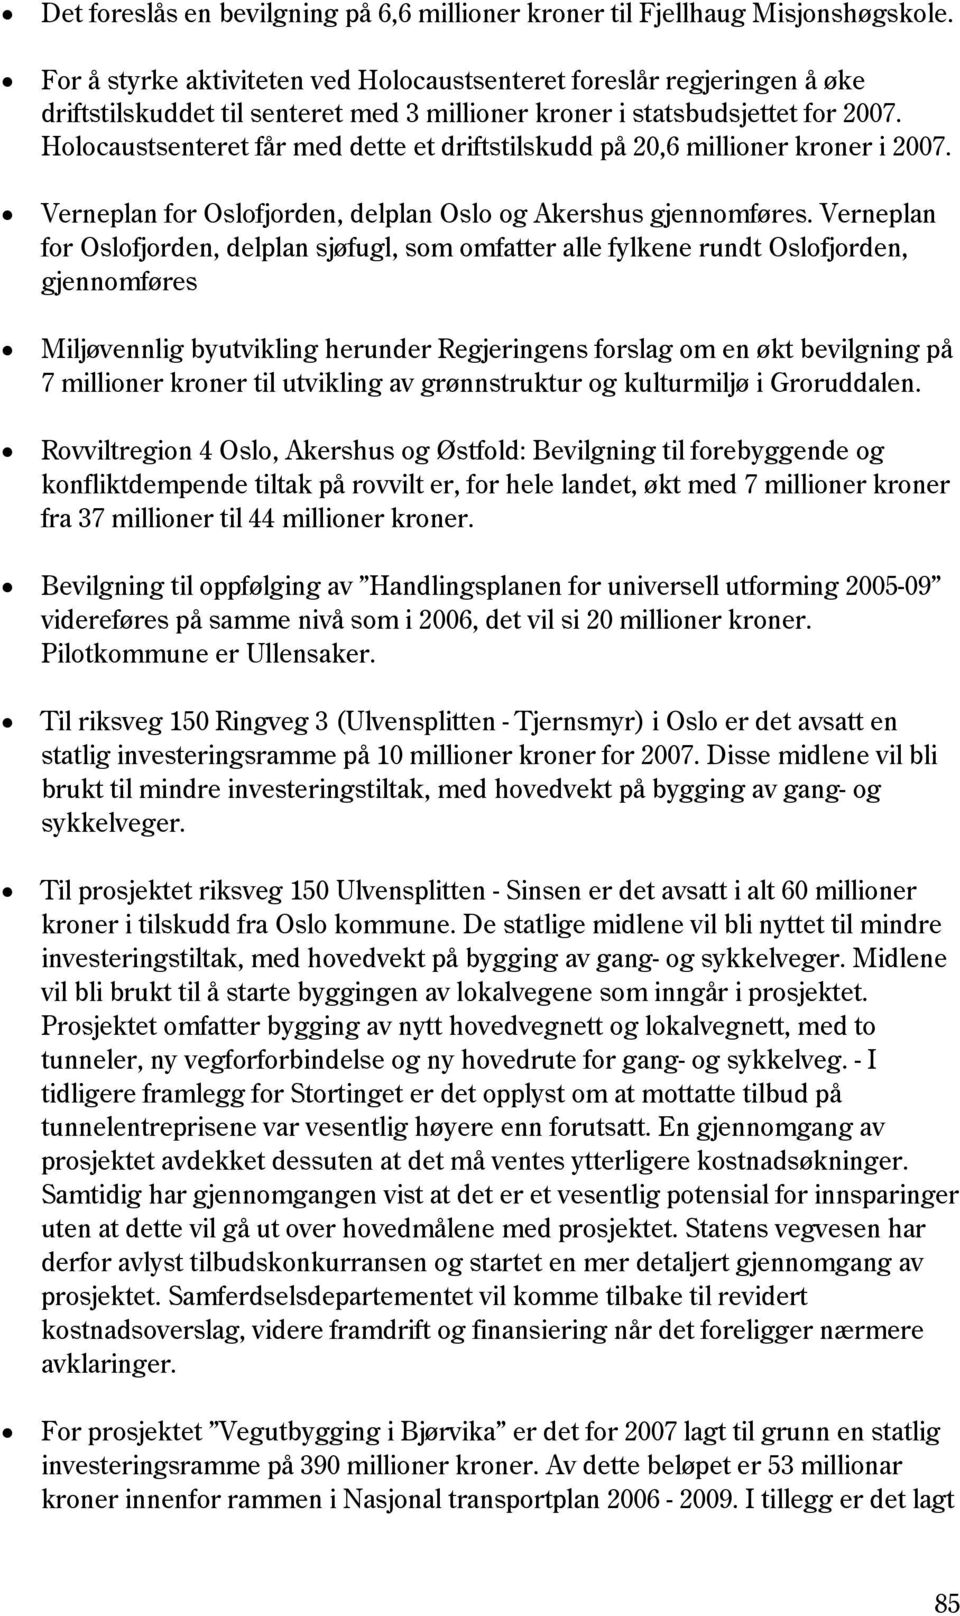 Holocaustsenteret får med dette et driftstilskudd på 20,6 millioner kroner i 2007. Verneplan for Oslofjorden, delplan Oslo og Akershus gjennomføres.